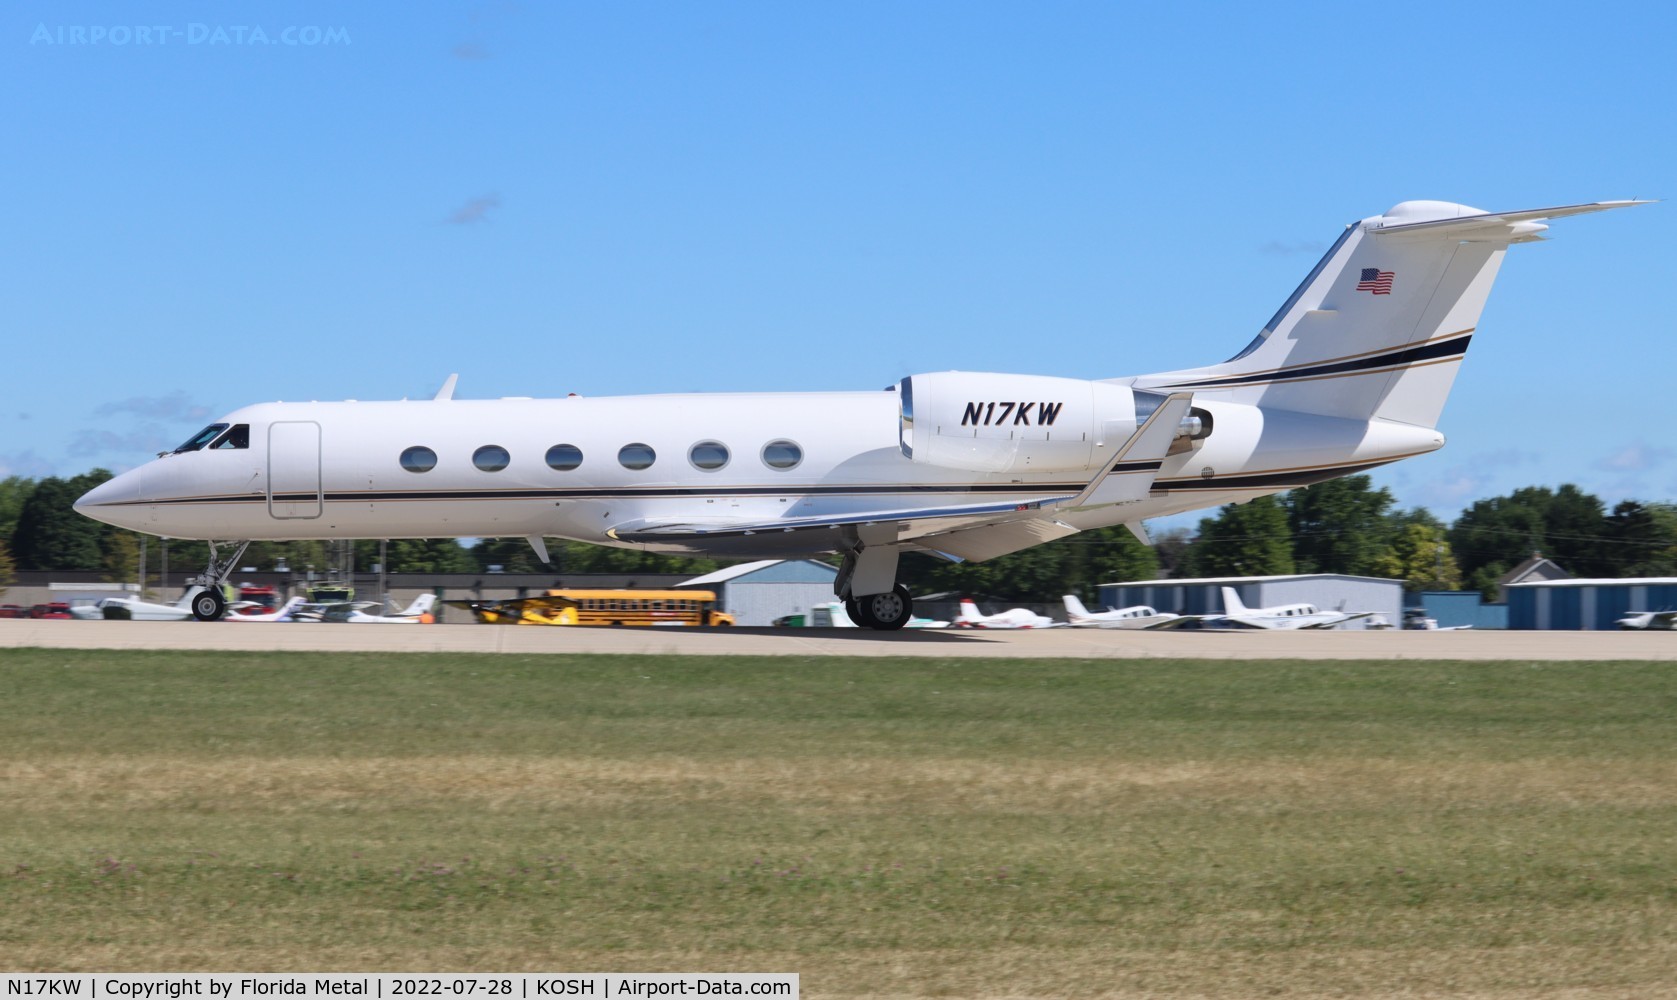 N17KW, 1999 Gulfstream Aerospace G-IV C/N 1361, G-IV zx